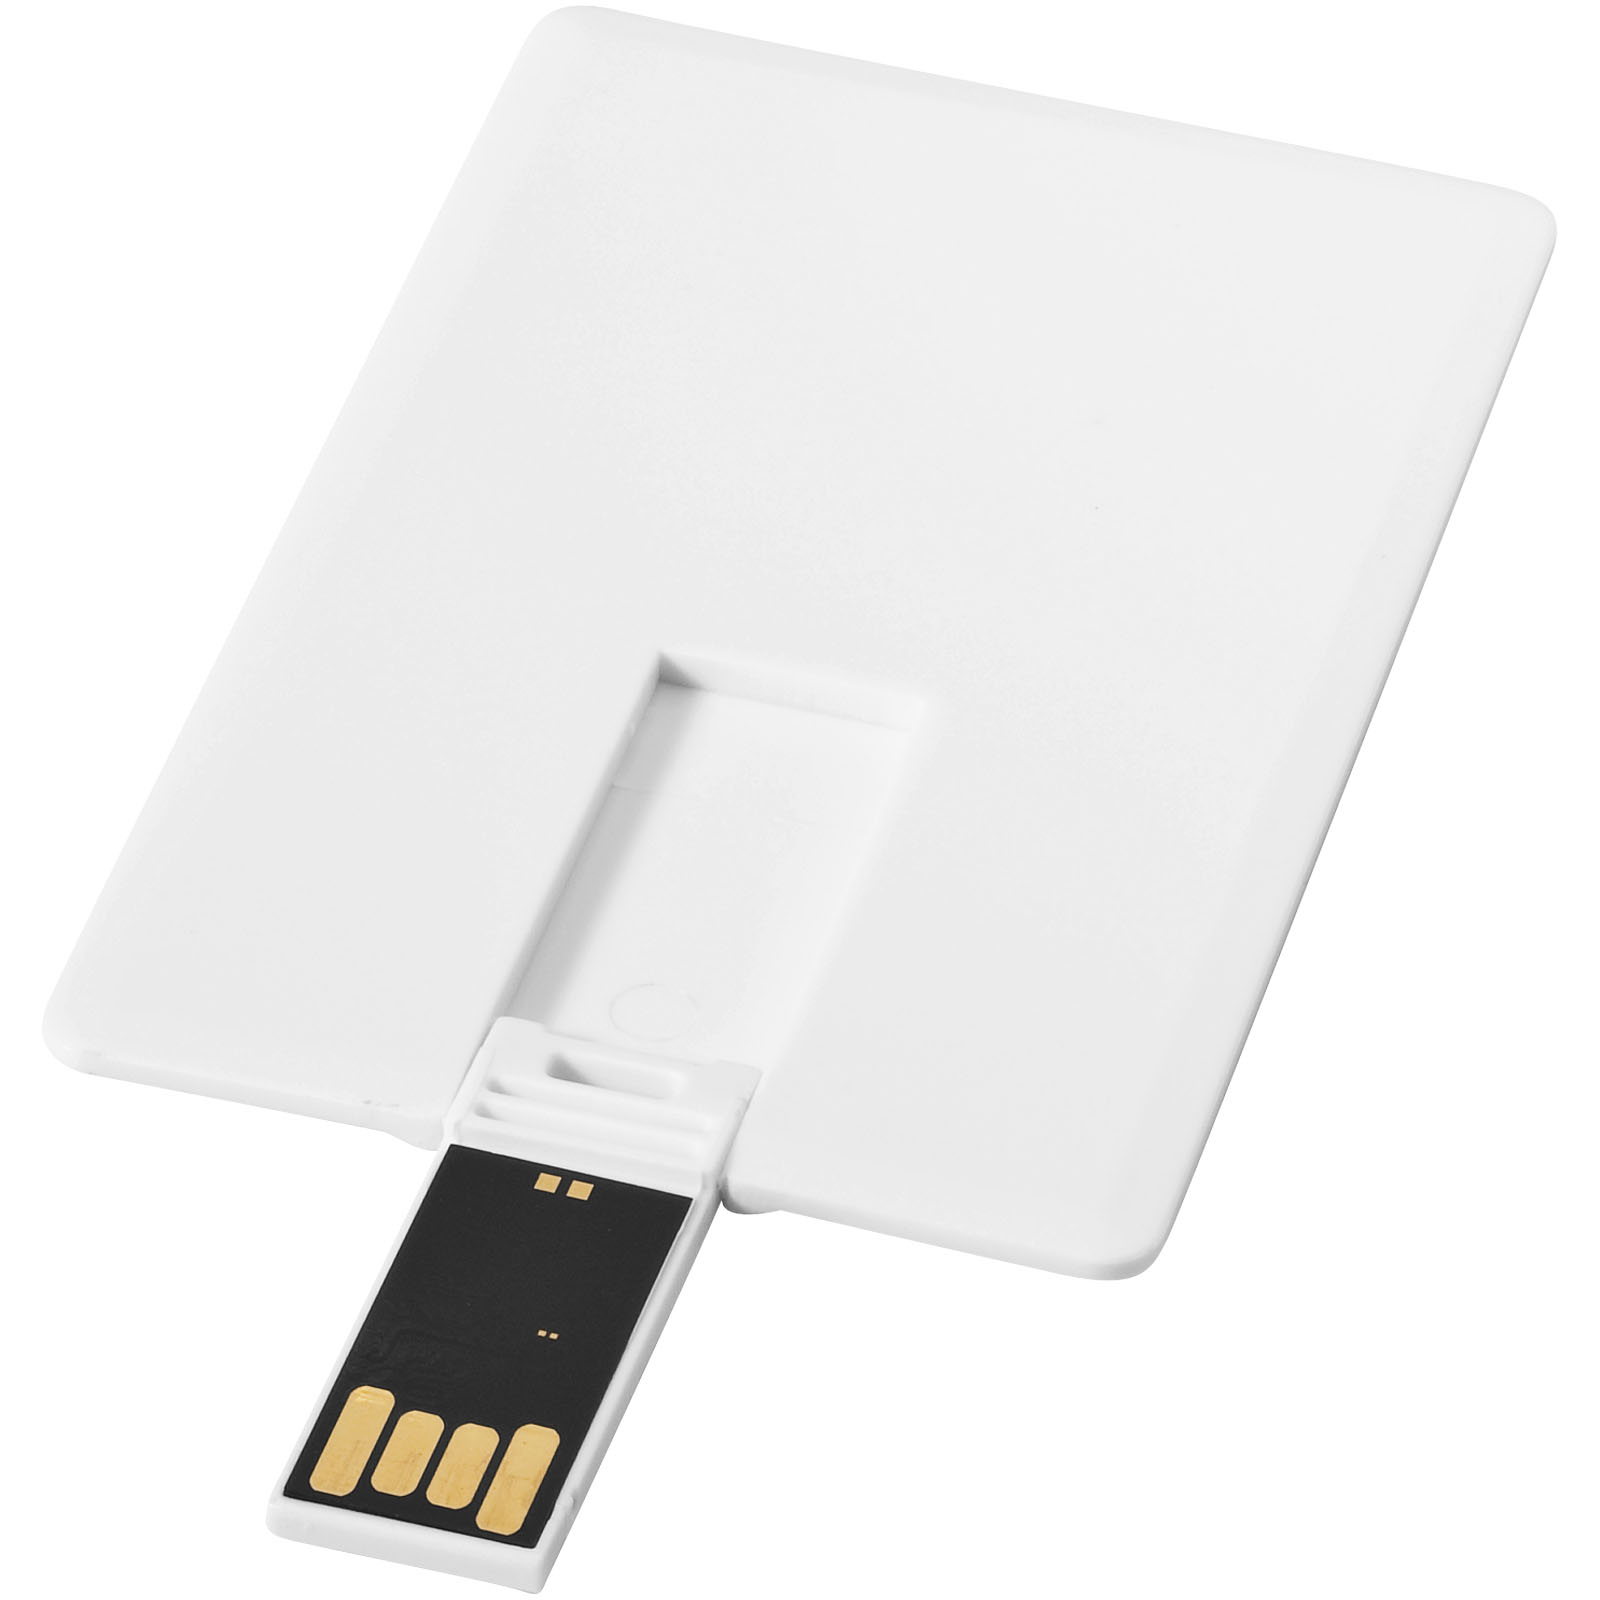 USB Flash Drives - Slim card-shaped 2GB USB flash drive